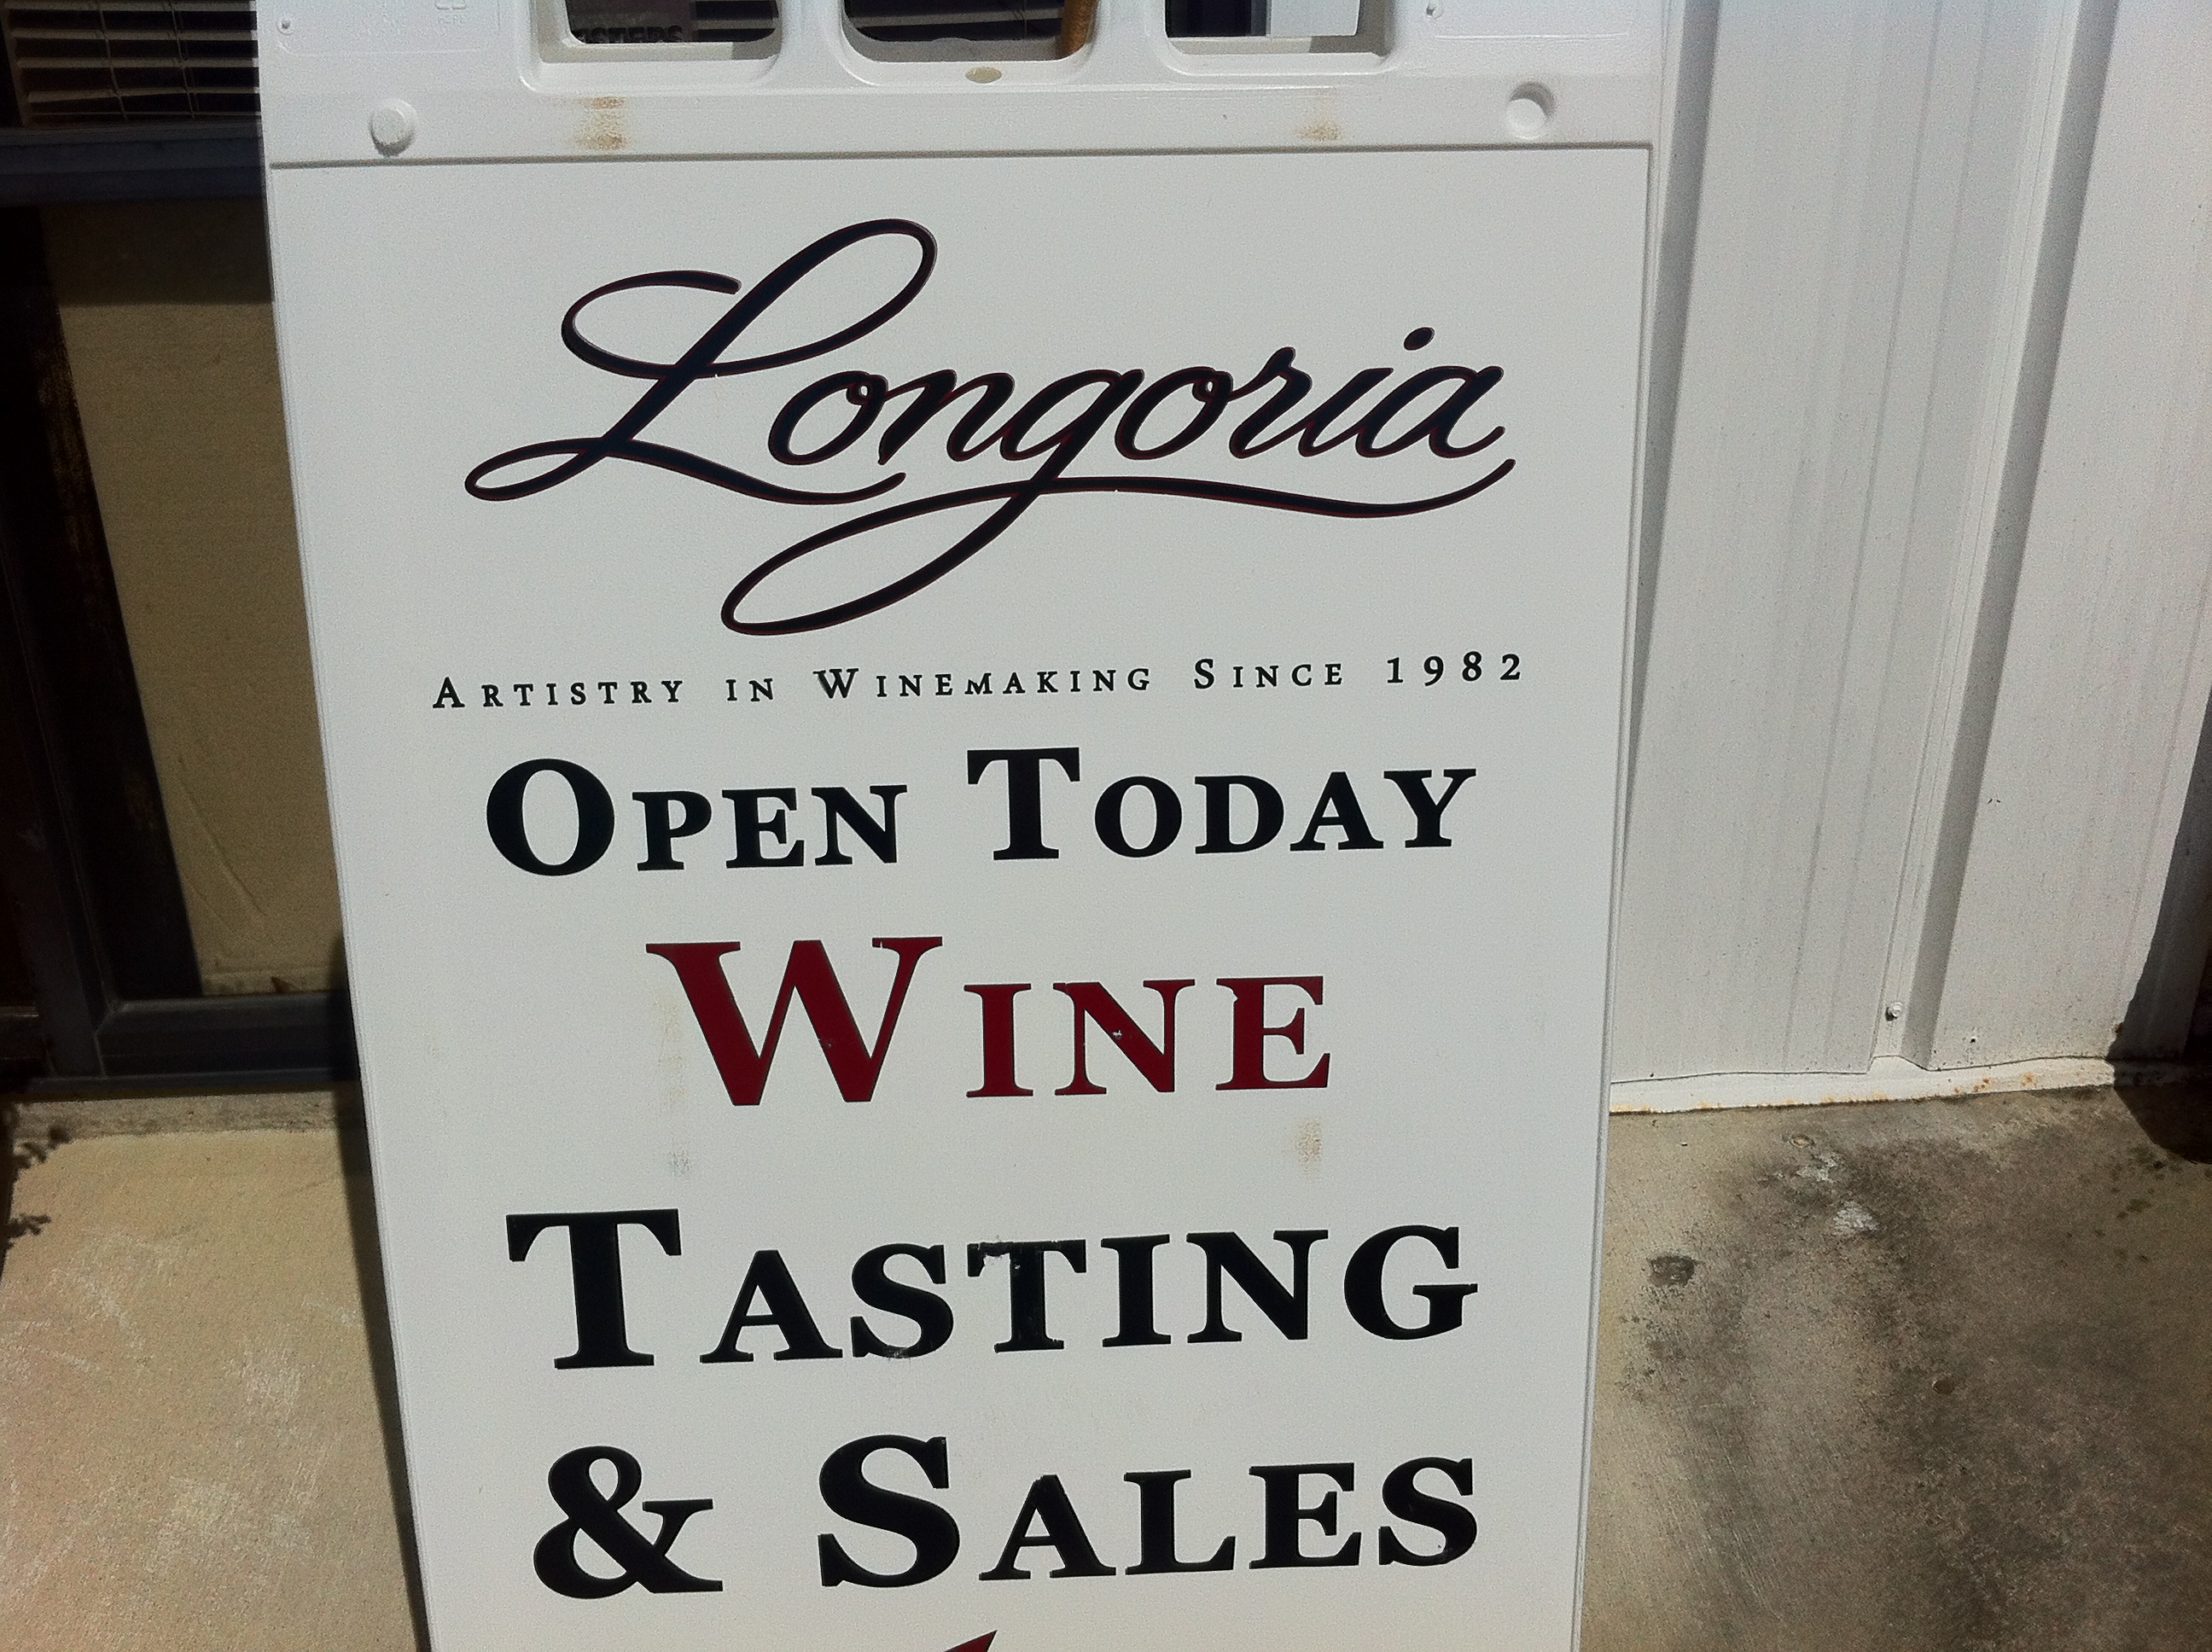 Longoria Winery